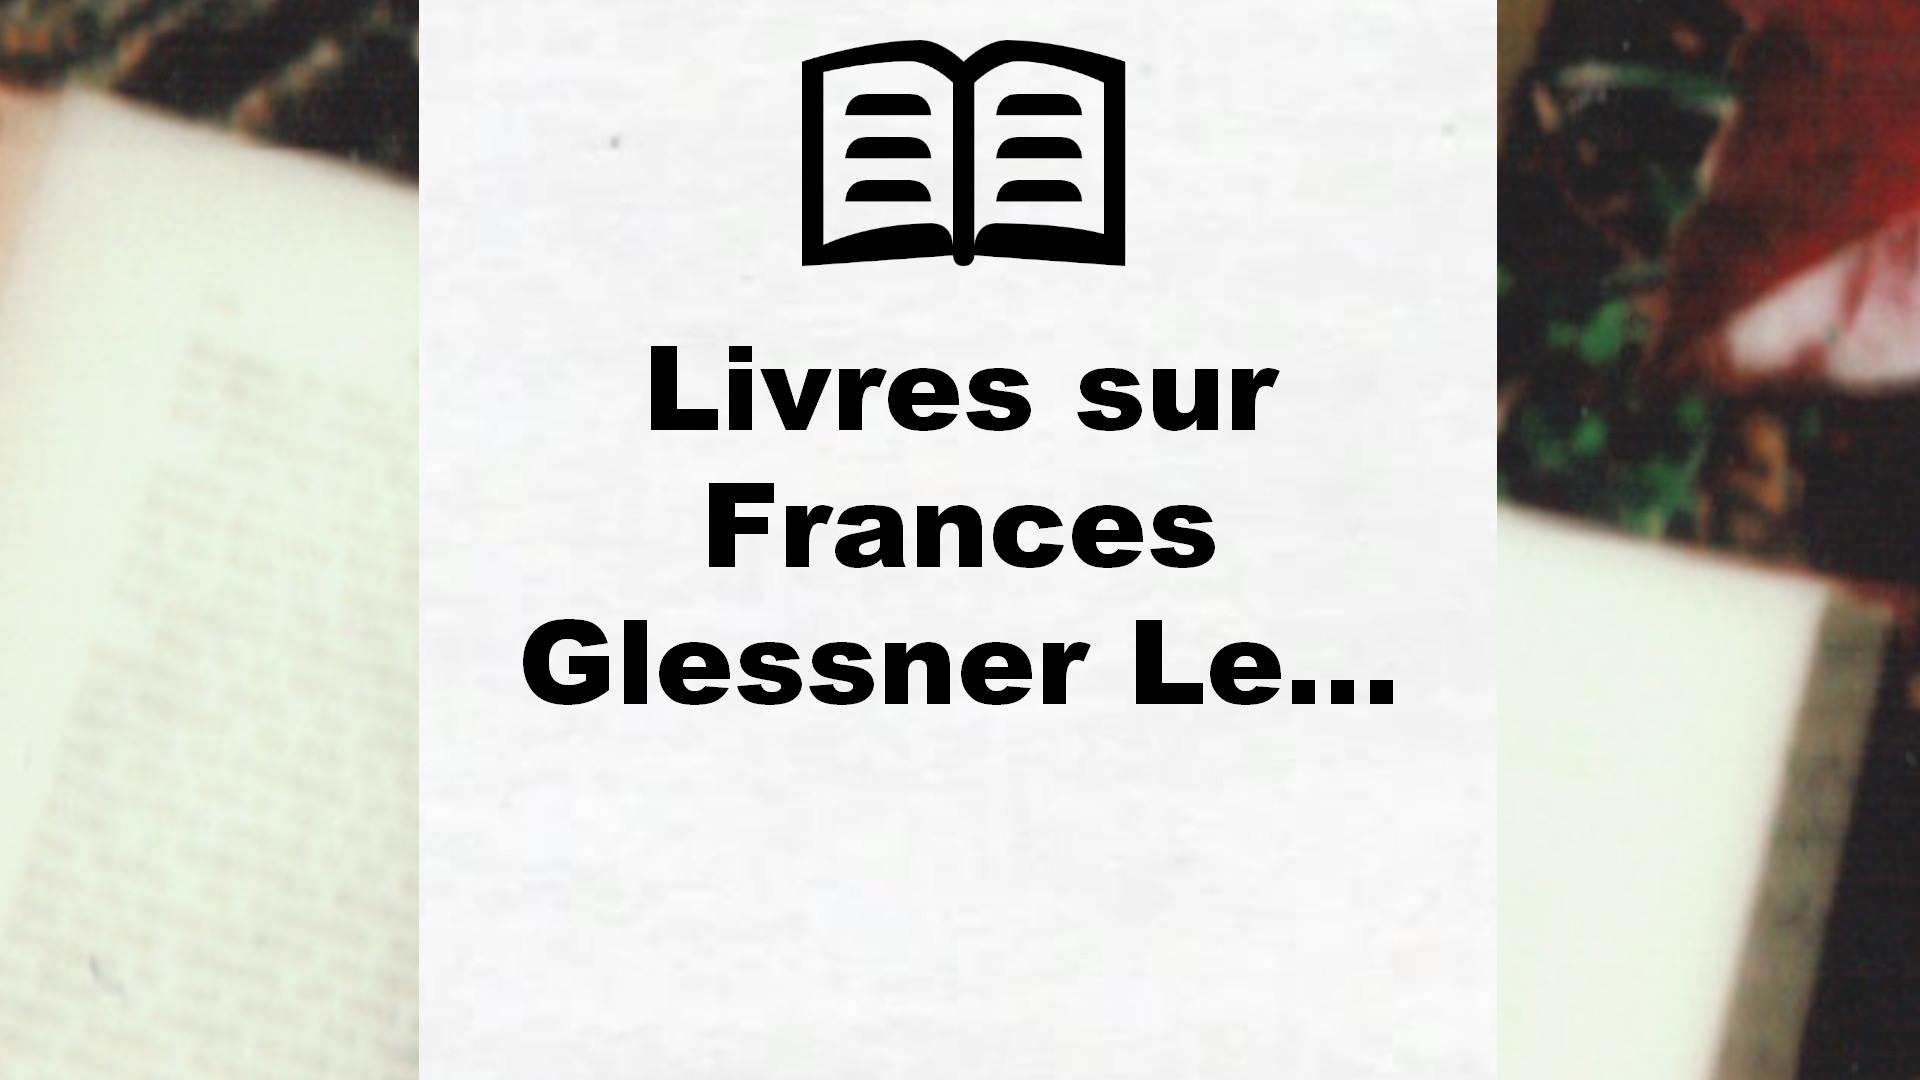 Livres sur Frances Glessner Lee